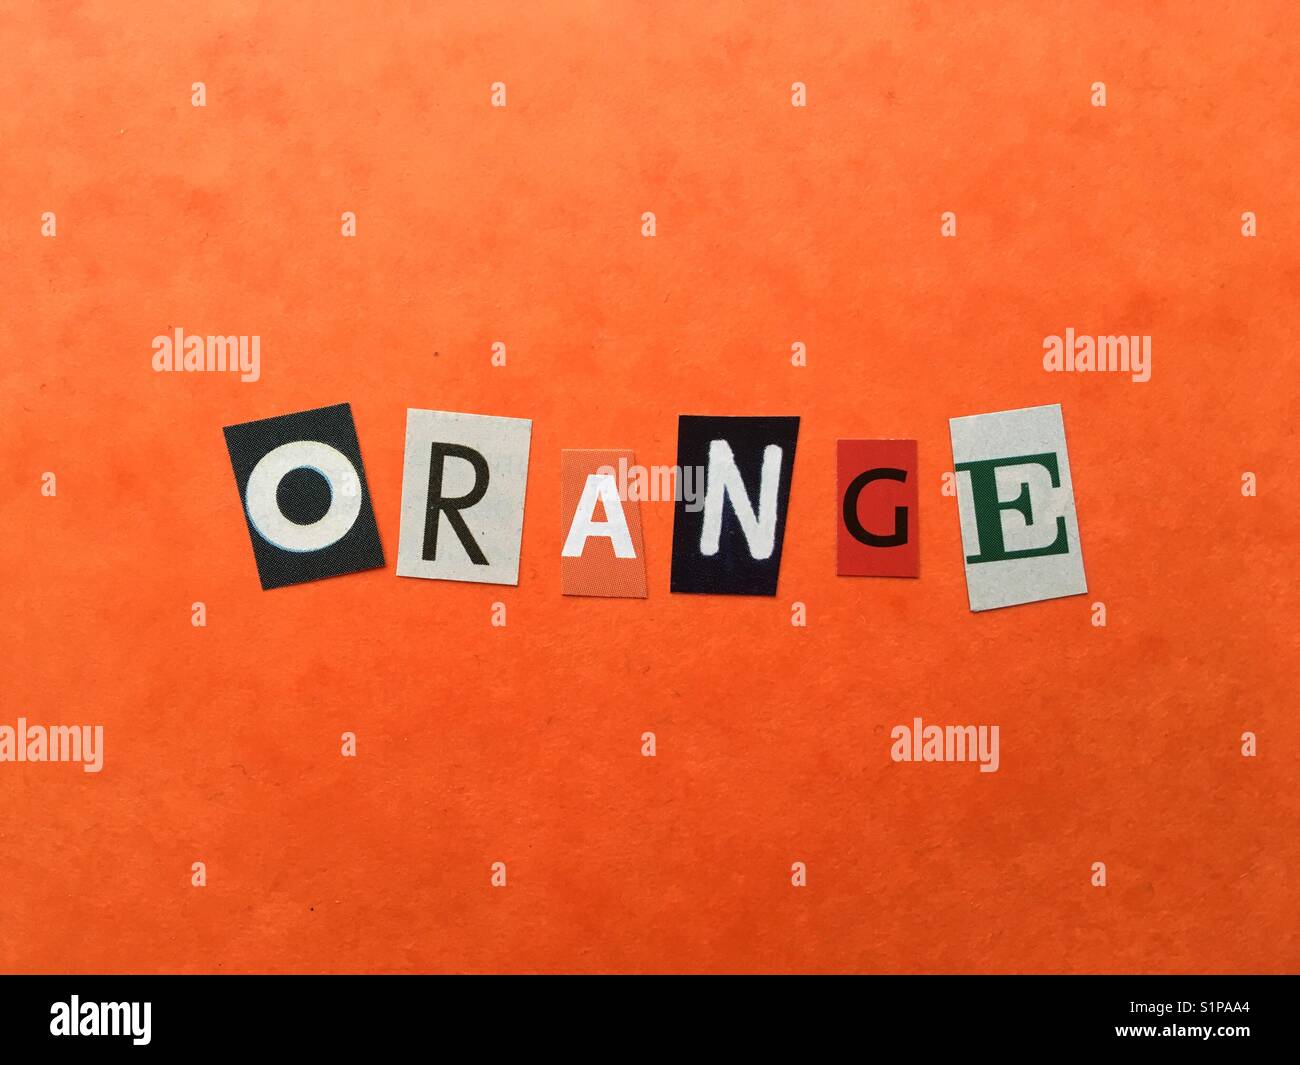 orange Banque D'Images